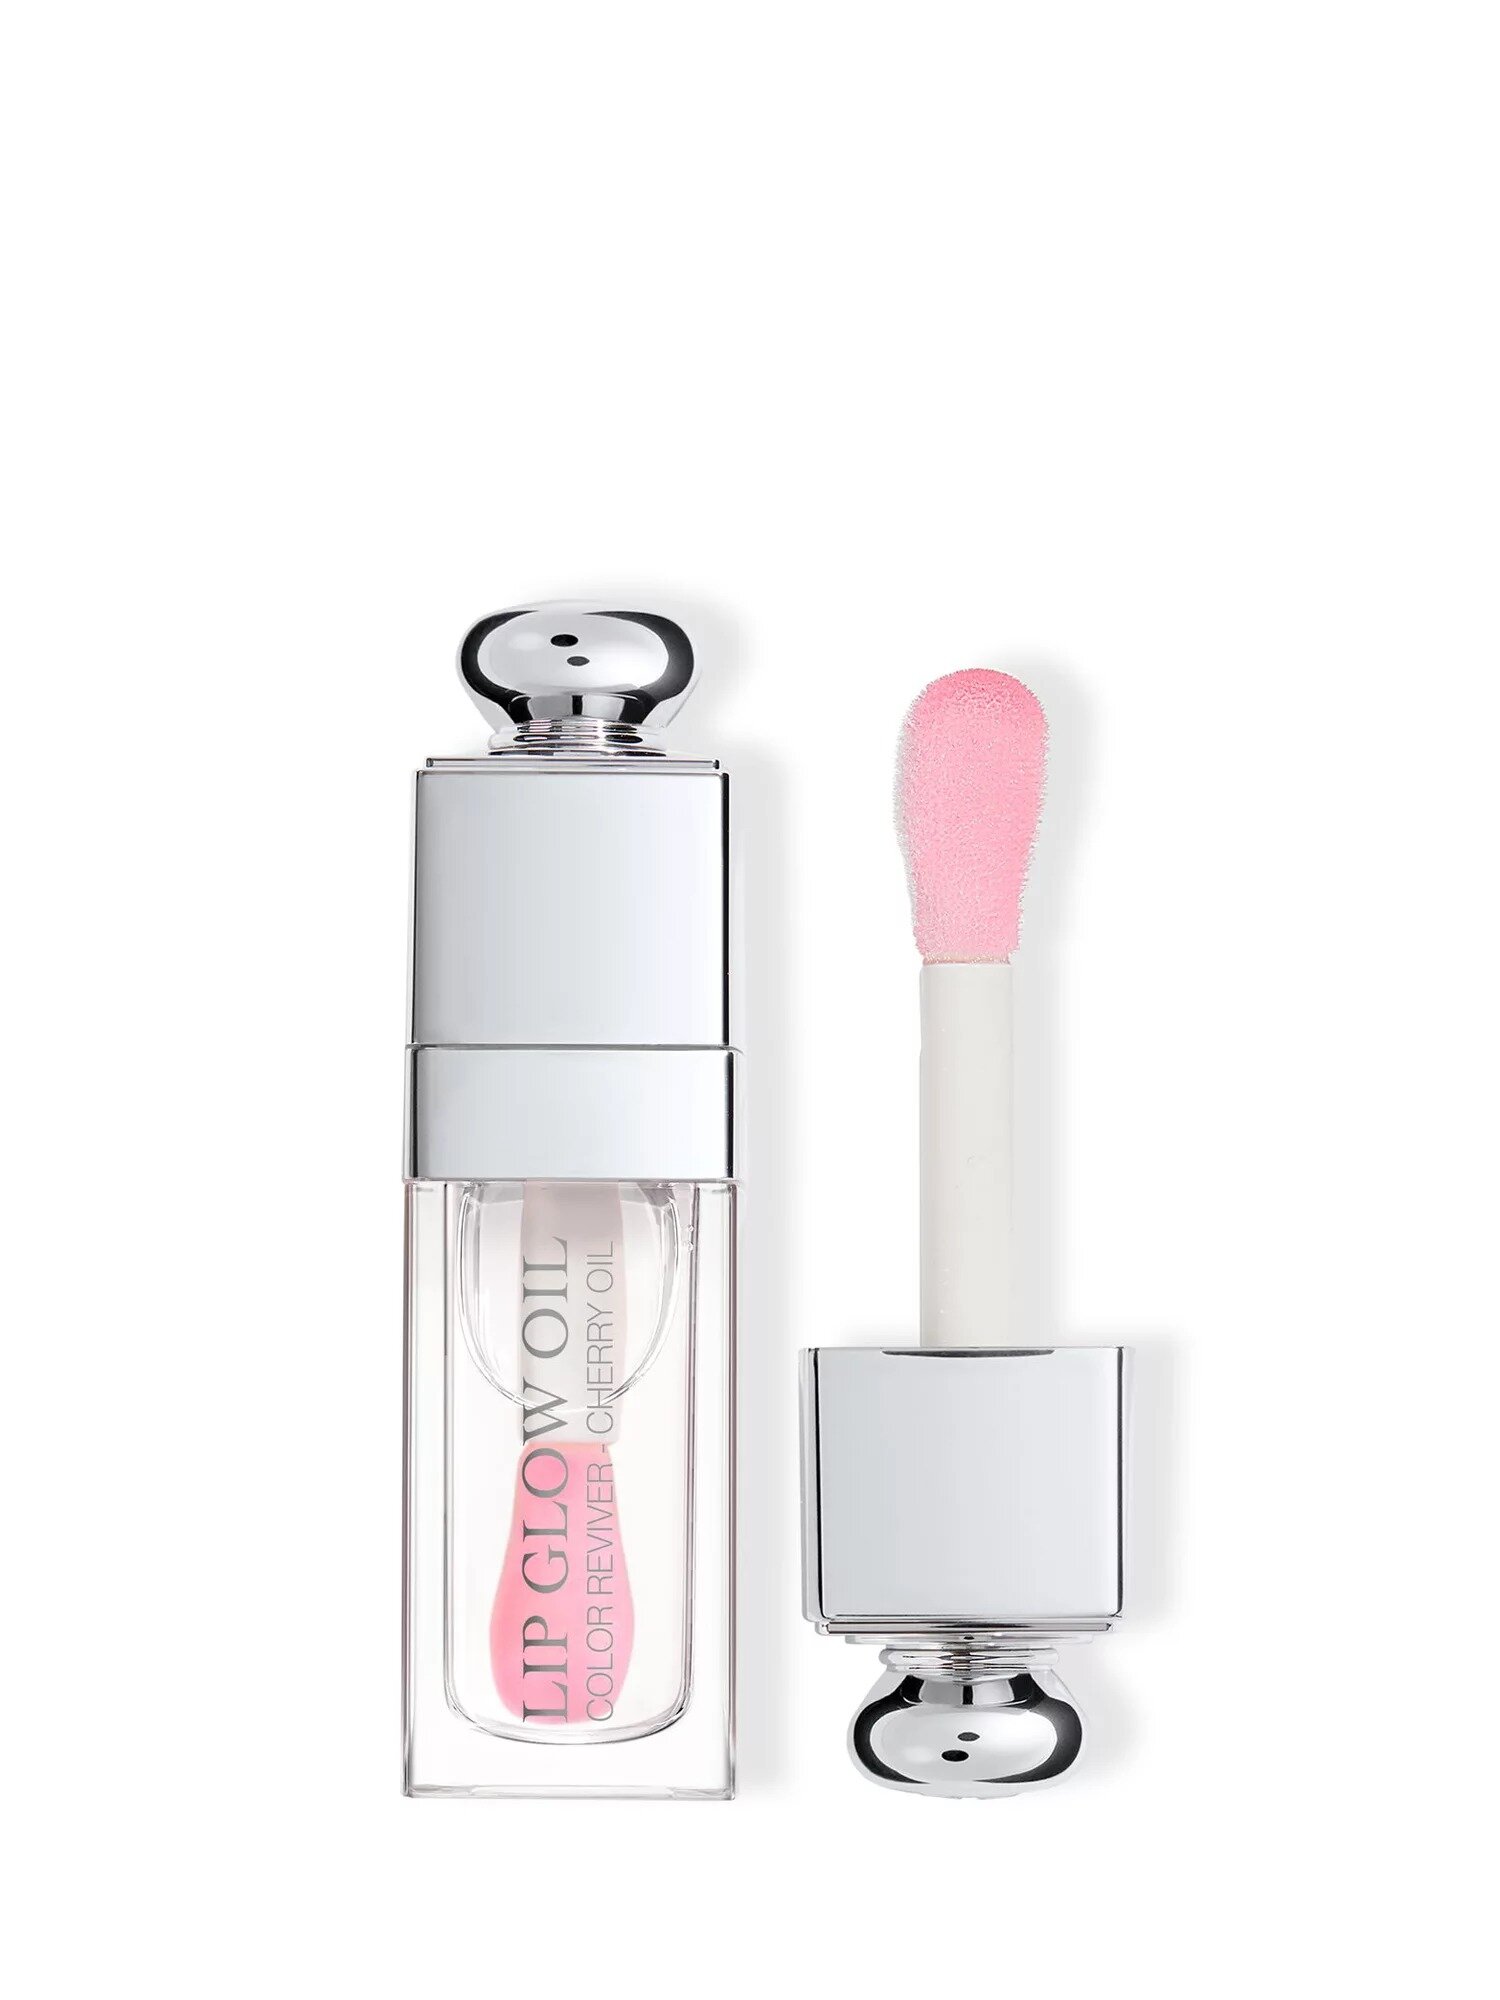 Dior масло для губ Addict lip glow oil, №000 - Universal clear Универсальный